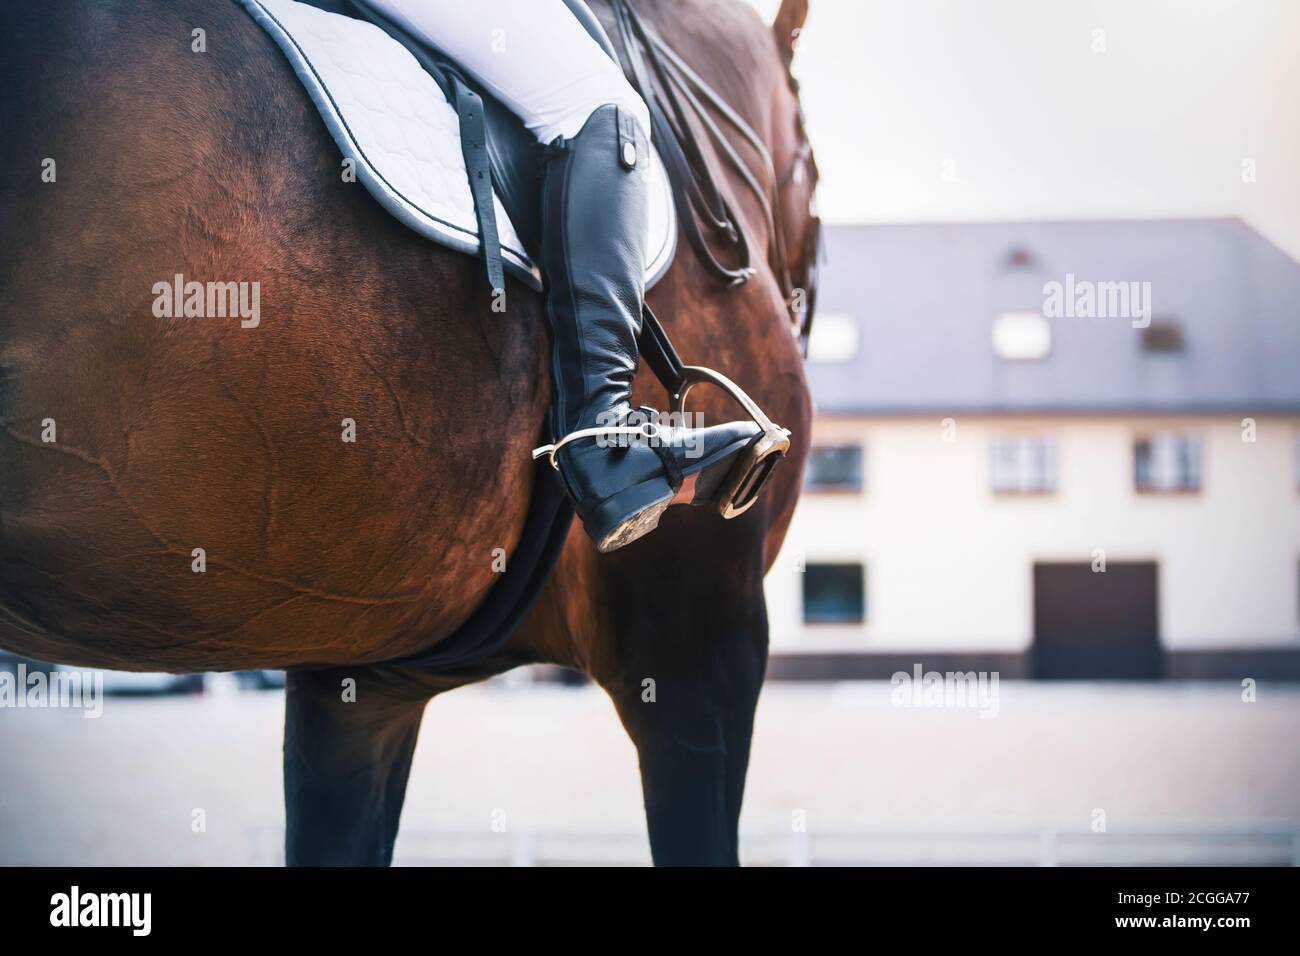 Contra el fondo del establo, un jinete en botas negras con espuradas monta un caballo de carreras de deportes de la bahía. Estribo. Equipamiento deportivo ecuestre. Foto de stock